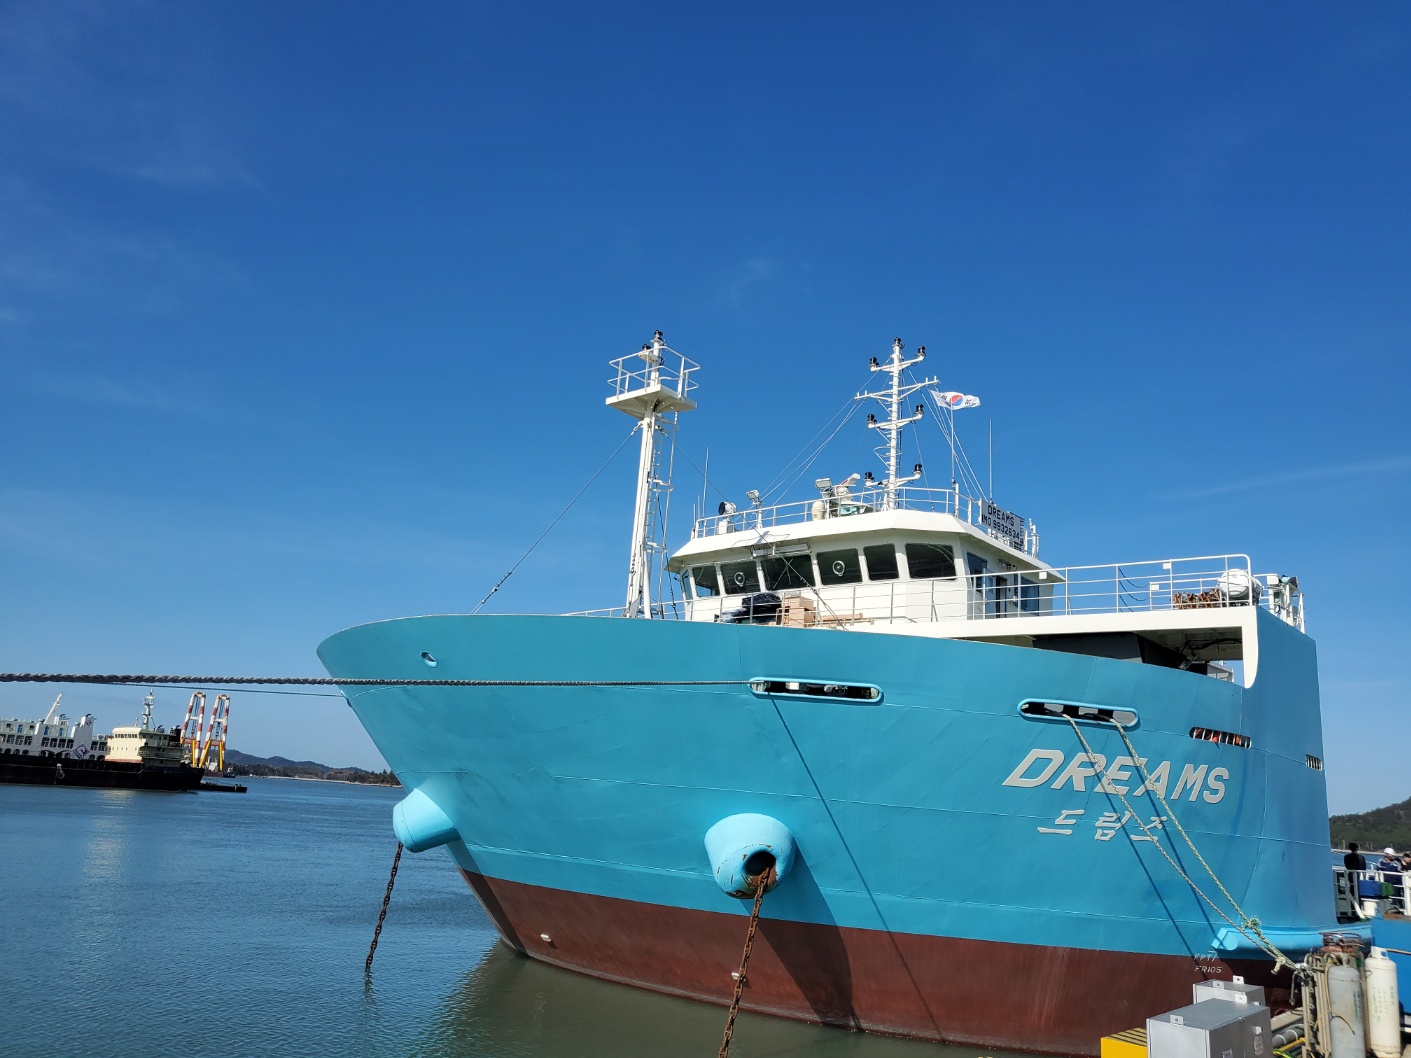 우리나라가 세계 최초로 개발한 해수담수화 선박인 ‘드림즈호’가 전남 목포 삽진부두에 정박해 있는 모습.